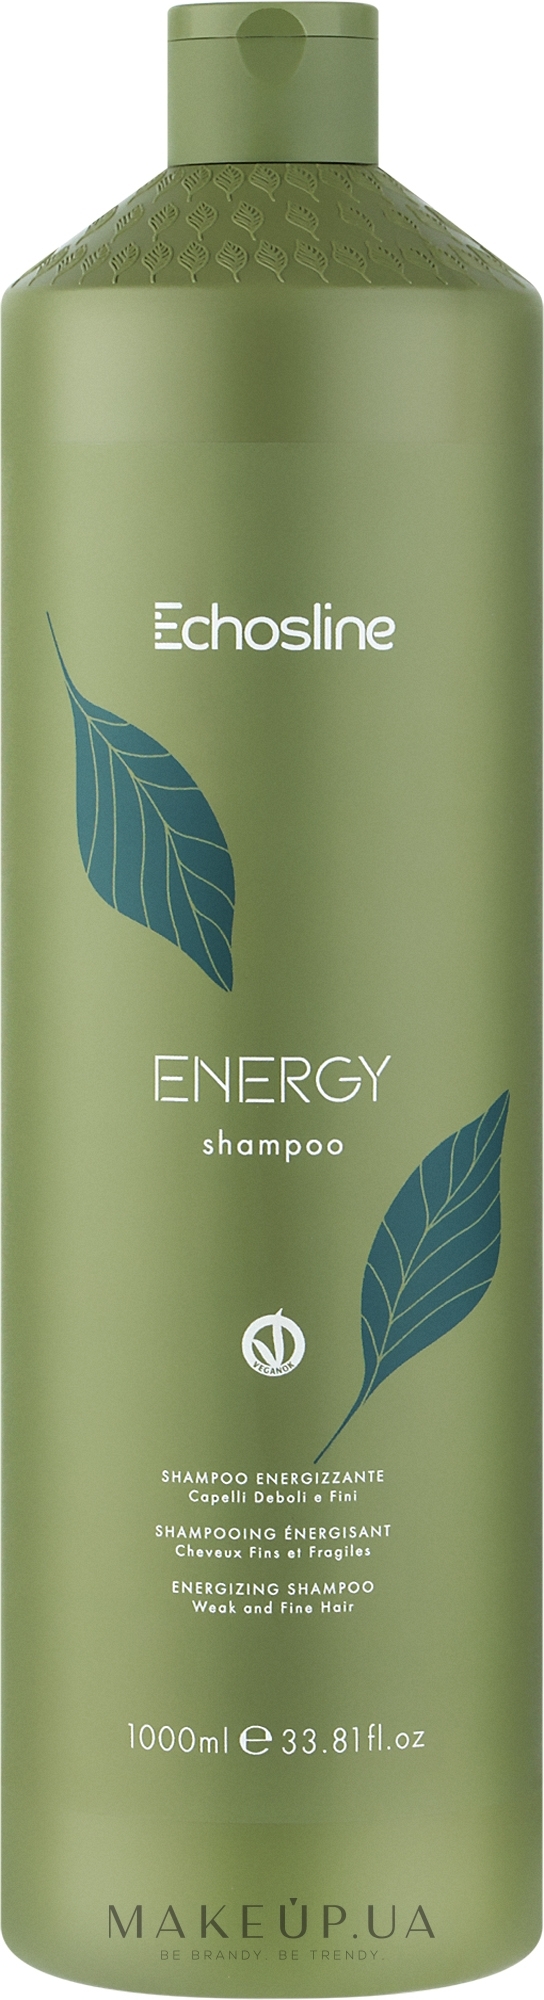 Шампунь для волосся - Echosline Energy Shampoo — фото 1000ml